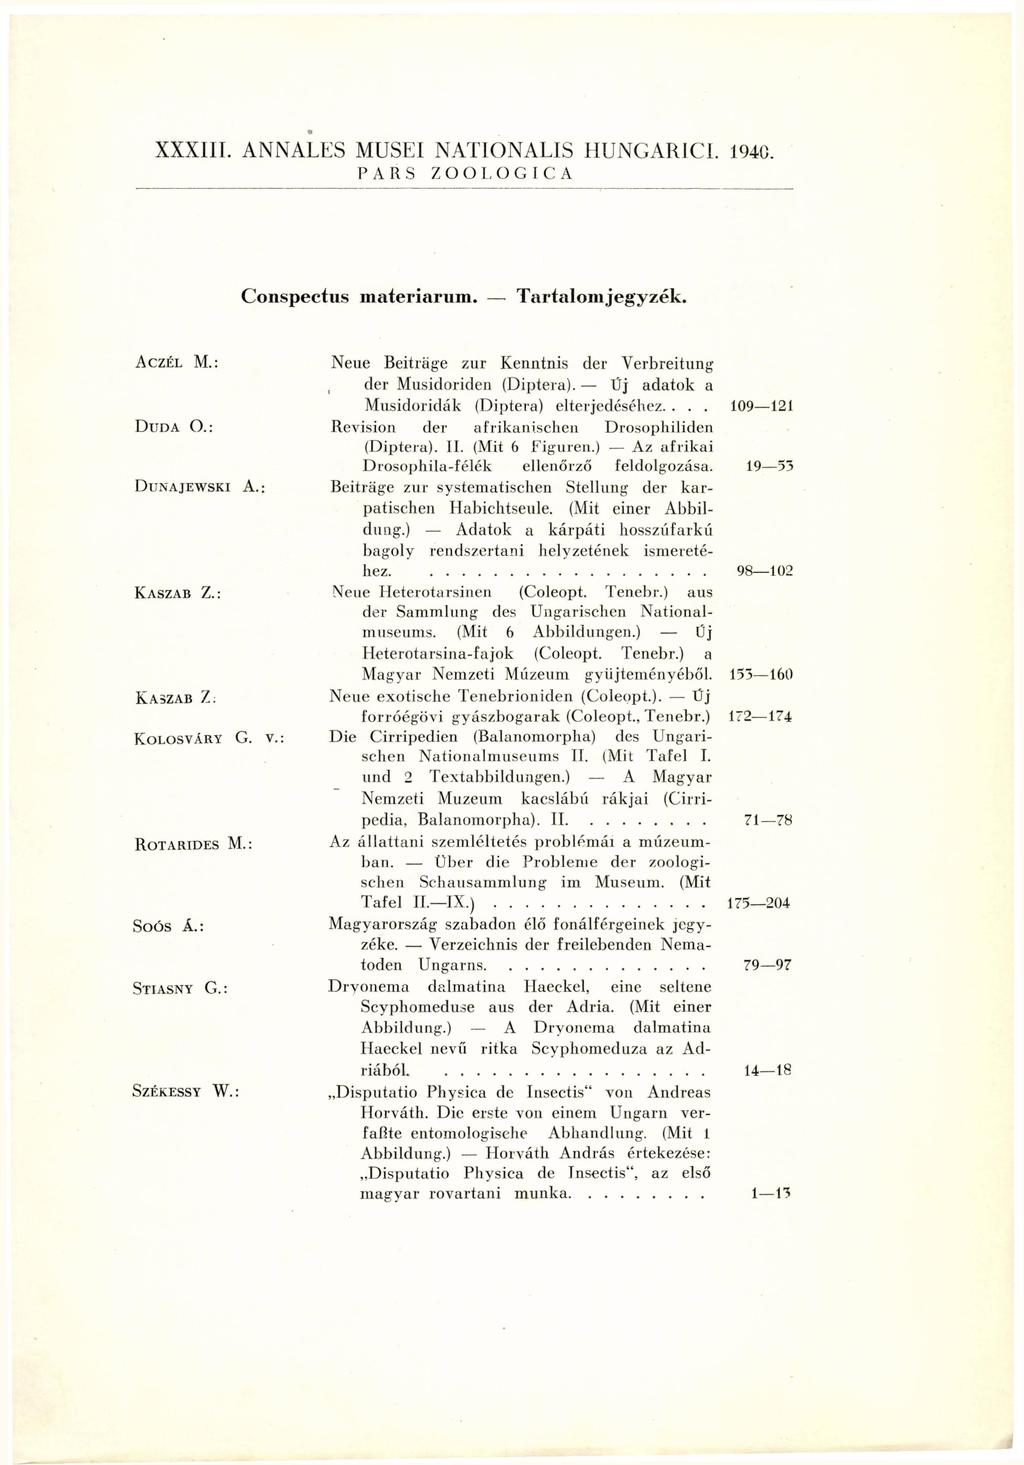 XXXIII. ANNALES MUSEI NATIONALIS HUNGARICI. 1940. PARS ZOOLOGICA Conspectus materiarum. Tartalomjegyzék. ACZÉL M.: DUDA O.; DlJNAJEWSKI A.: KASZAB Z.: KASZAB Z: KOLOSVÁRY G. V. ROT ARIDES M.: Soós Á.